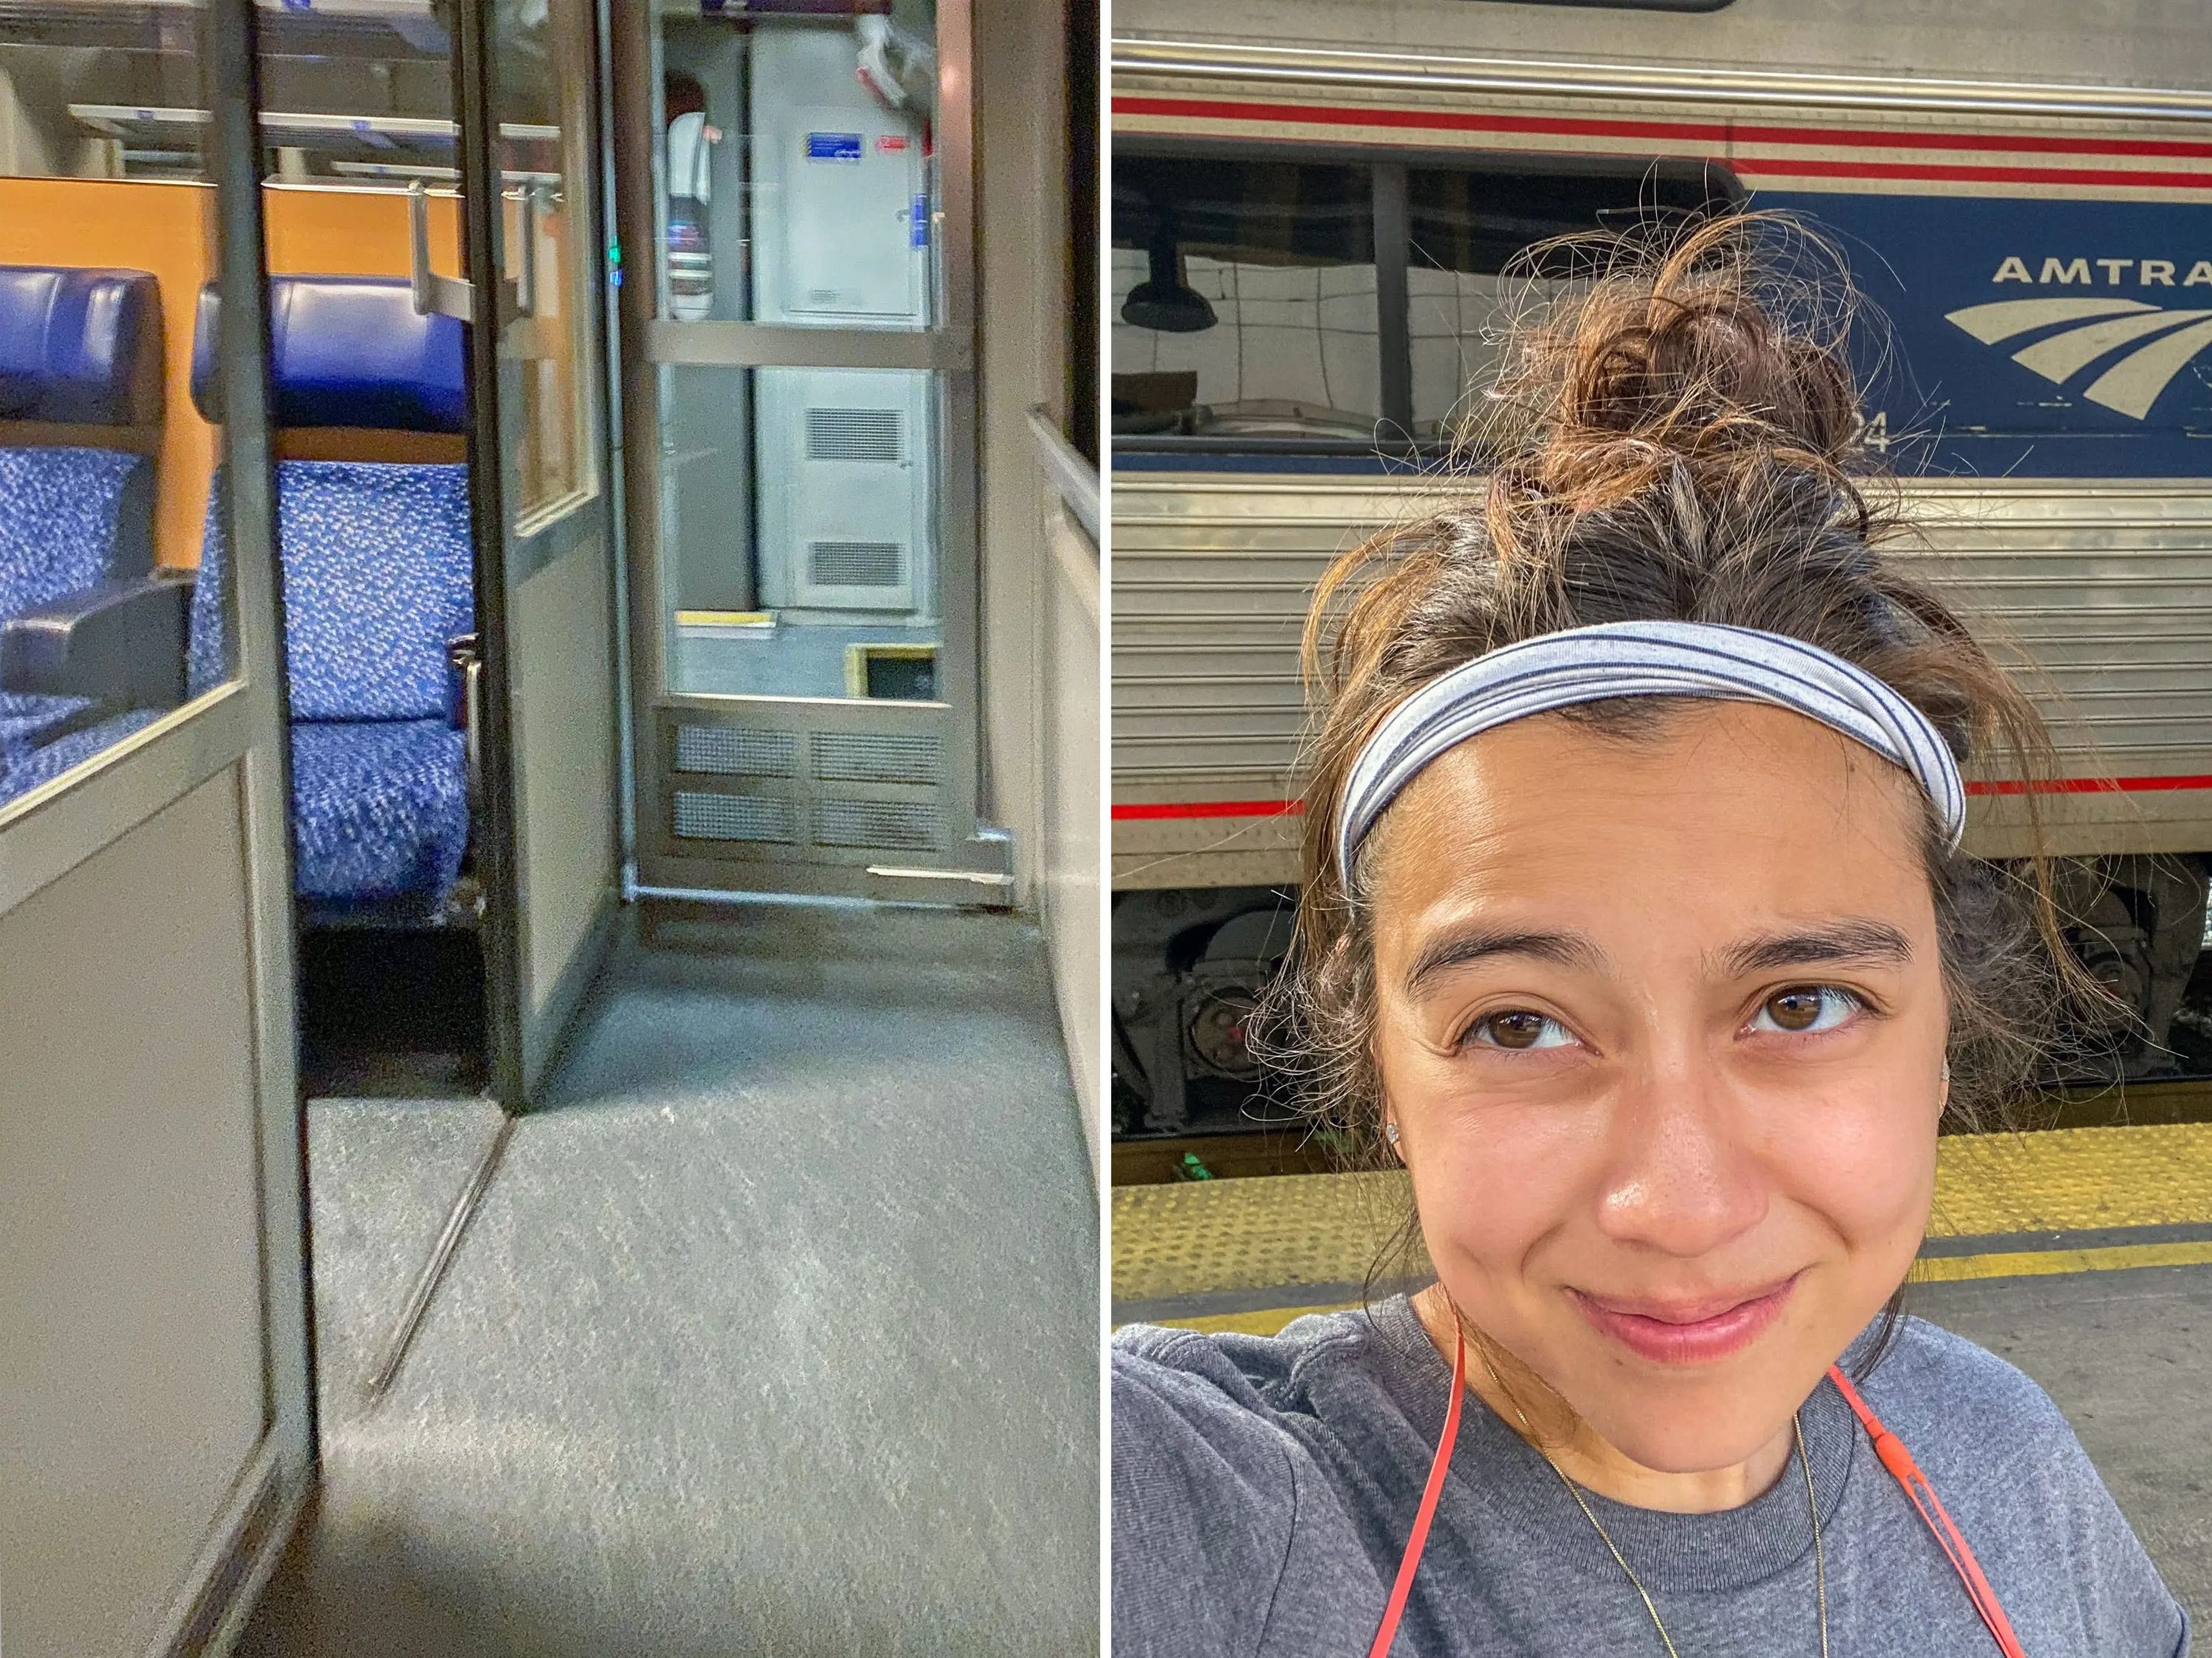 La autora pasea por un tren-cama en Berlín en octubre de 2022 (izda.) y estira las piernas durante una larga parada en un viaje de 30 horas en tren de Miami a Nueva York en octubre de 2021 (dcha.).